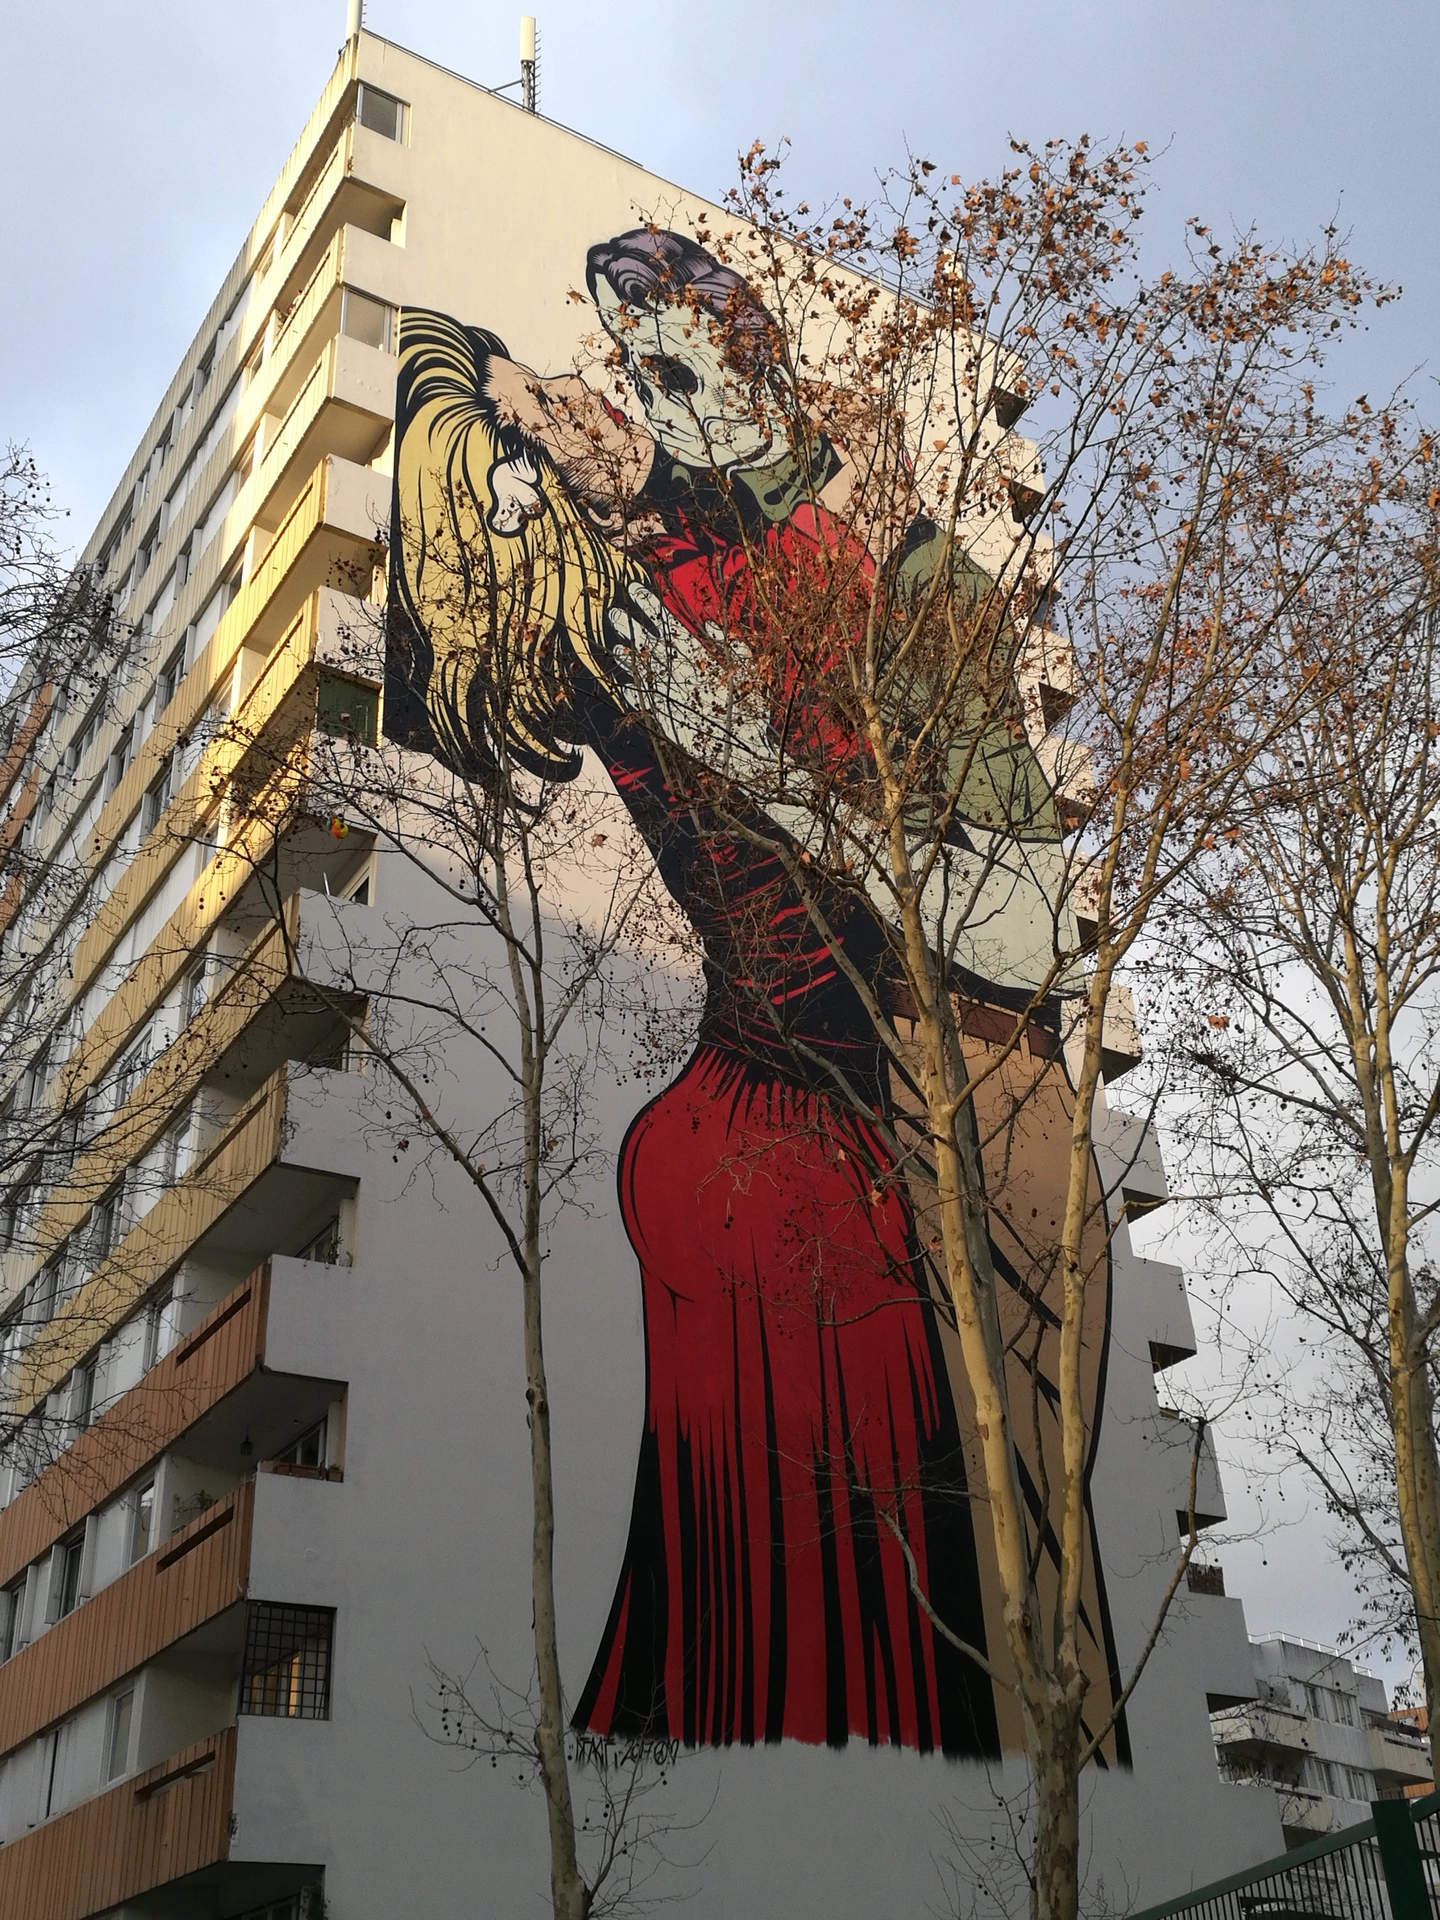 Oeuvre de Street Art réalisée par D*Face, D*Face à Paris